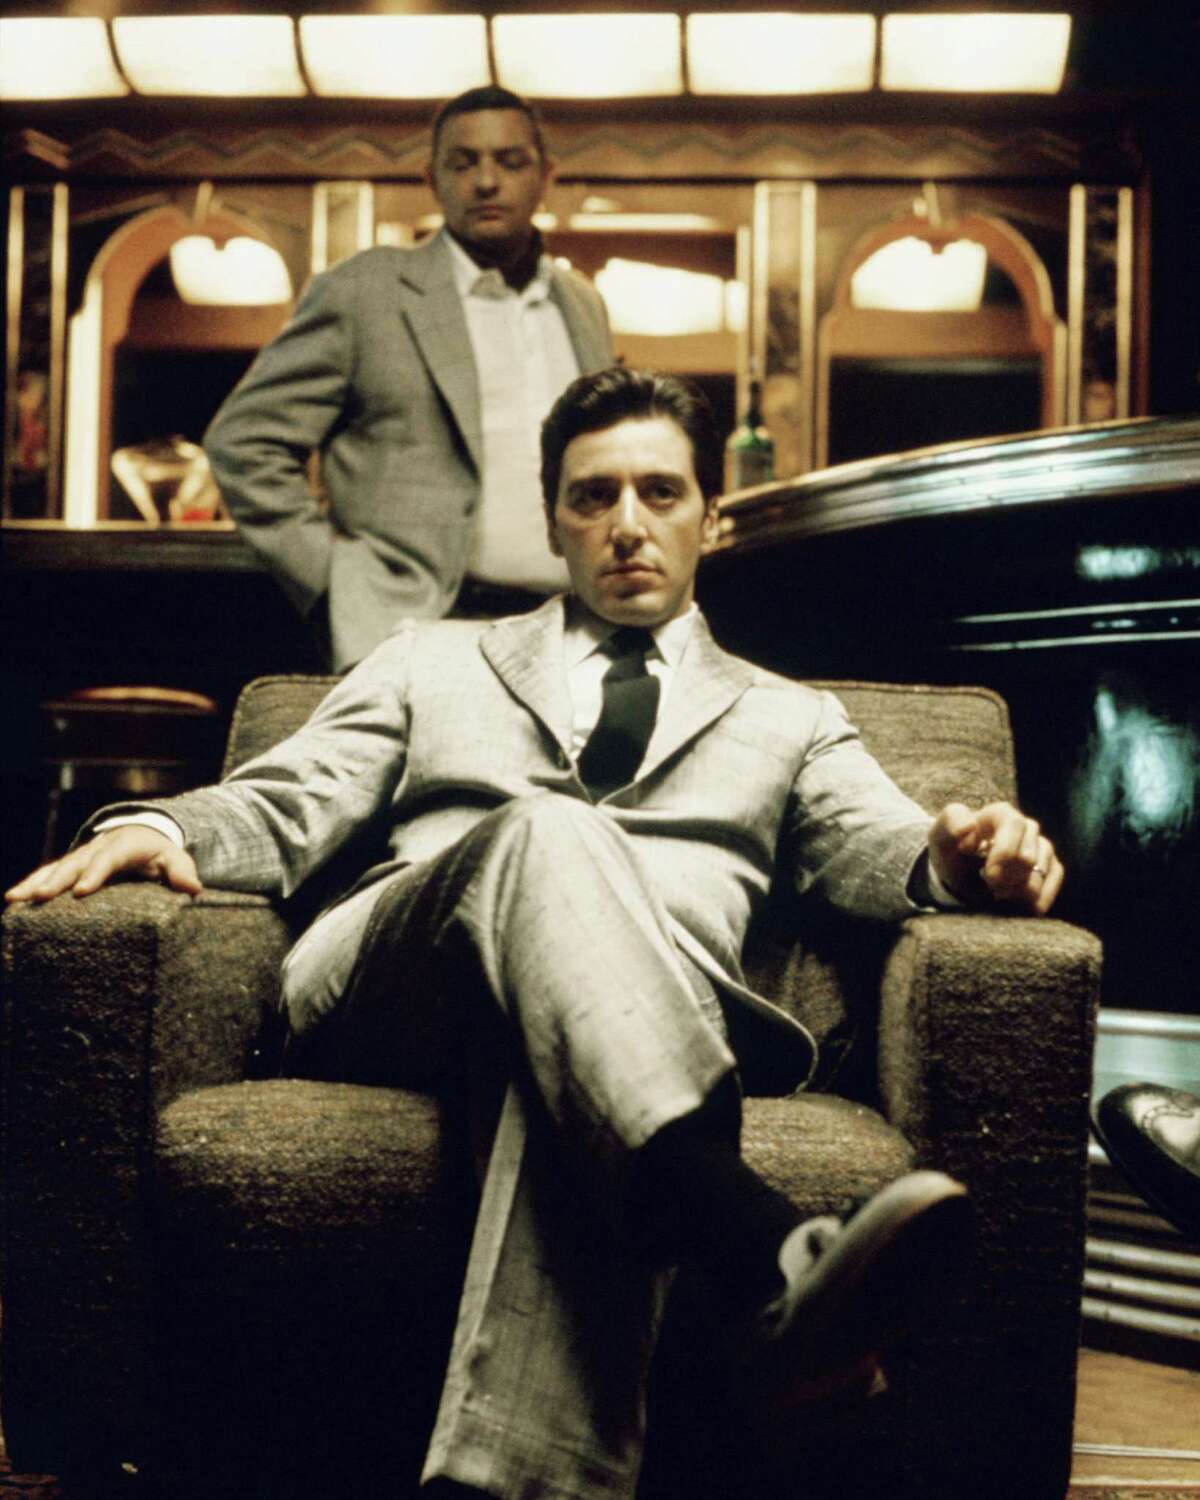 Al Pacino played Don Michael Corleone in the mafia drama.